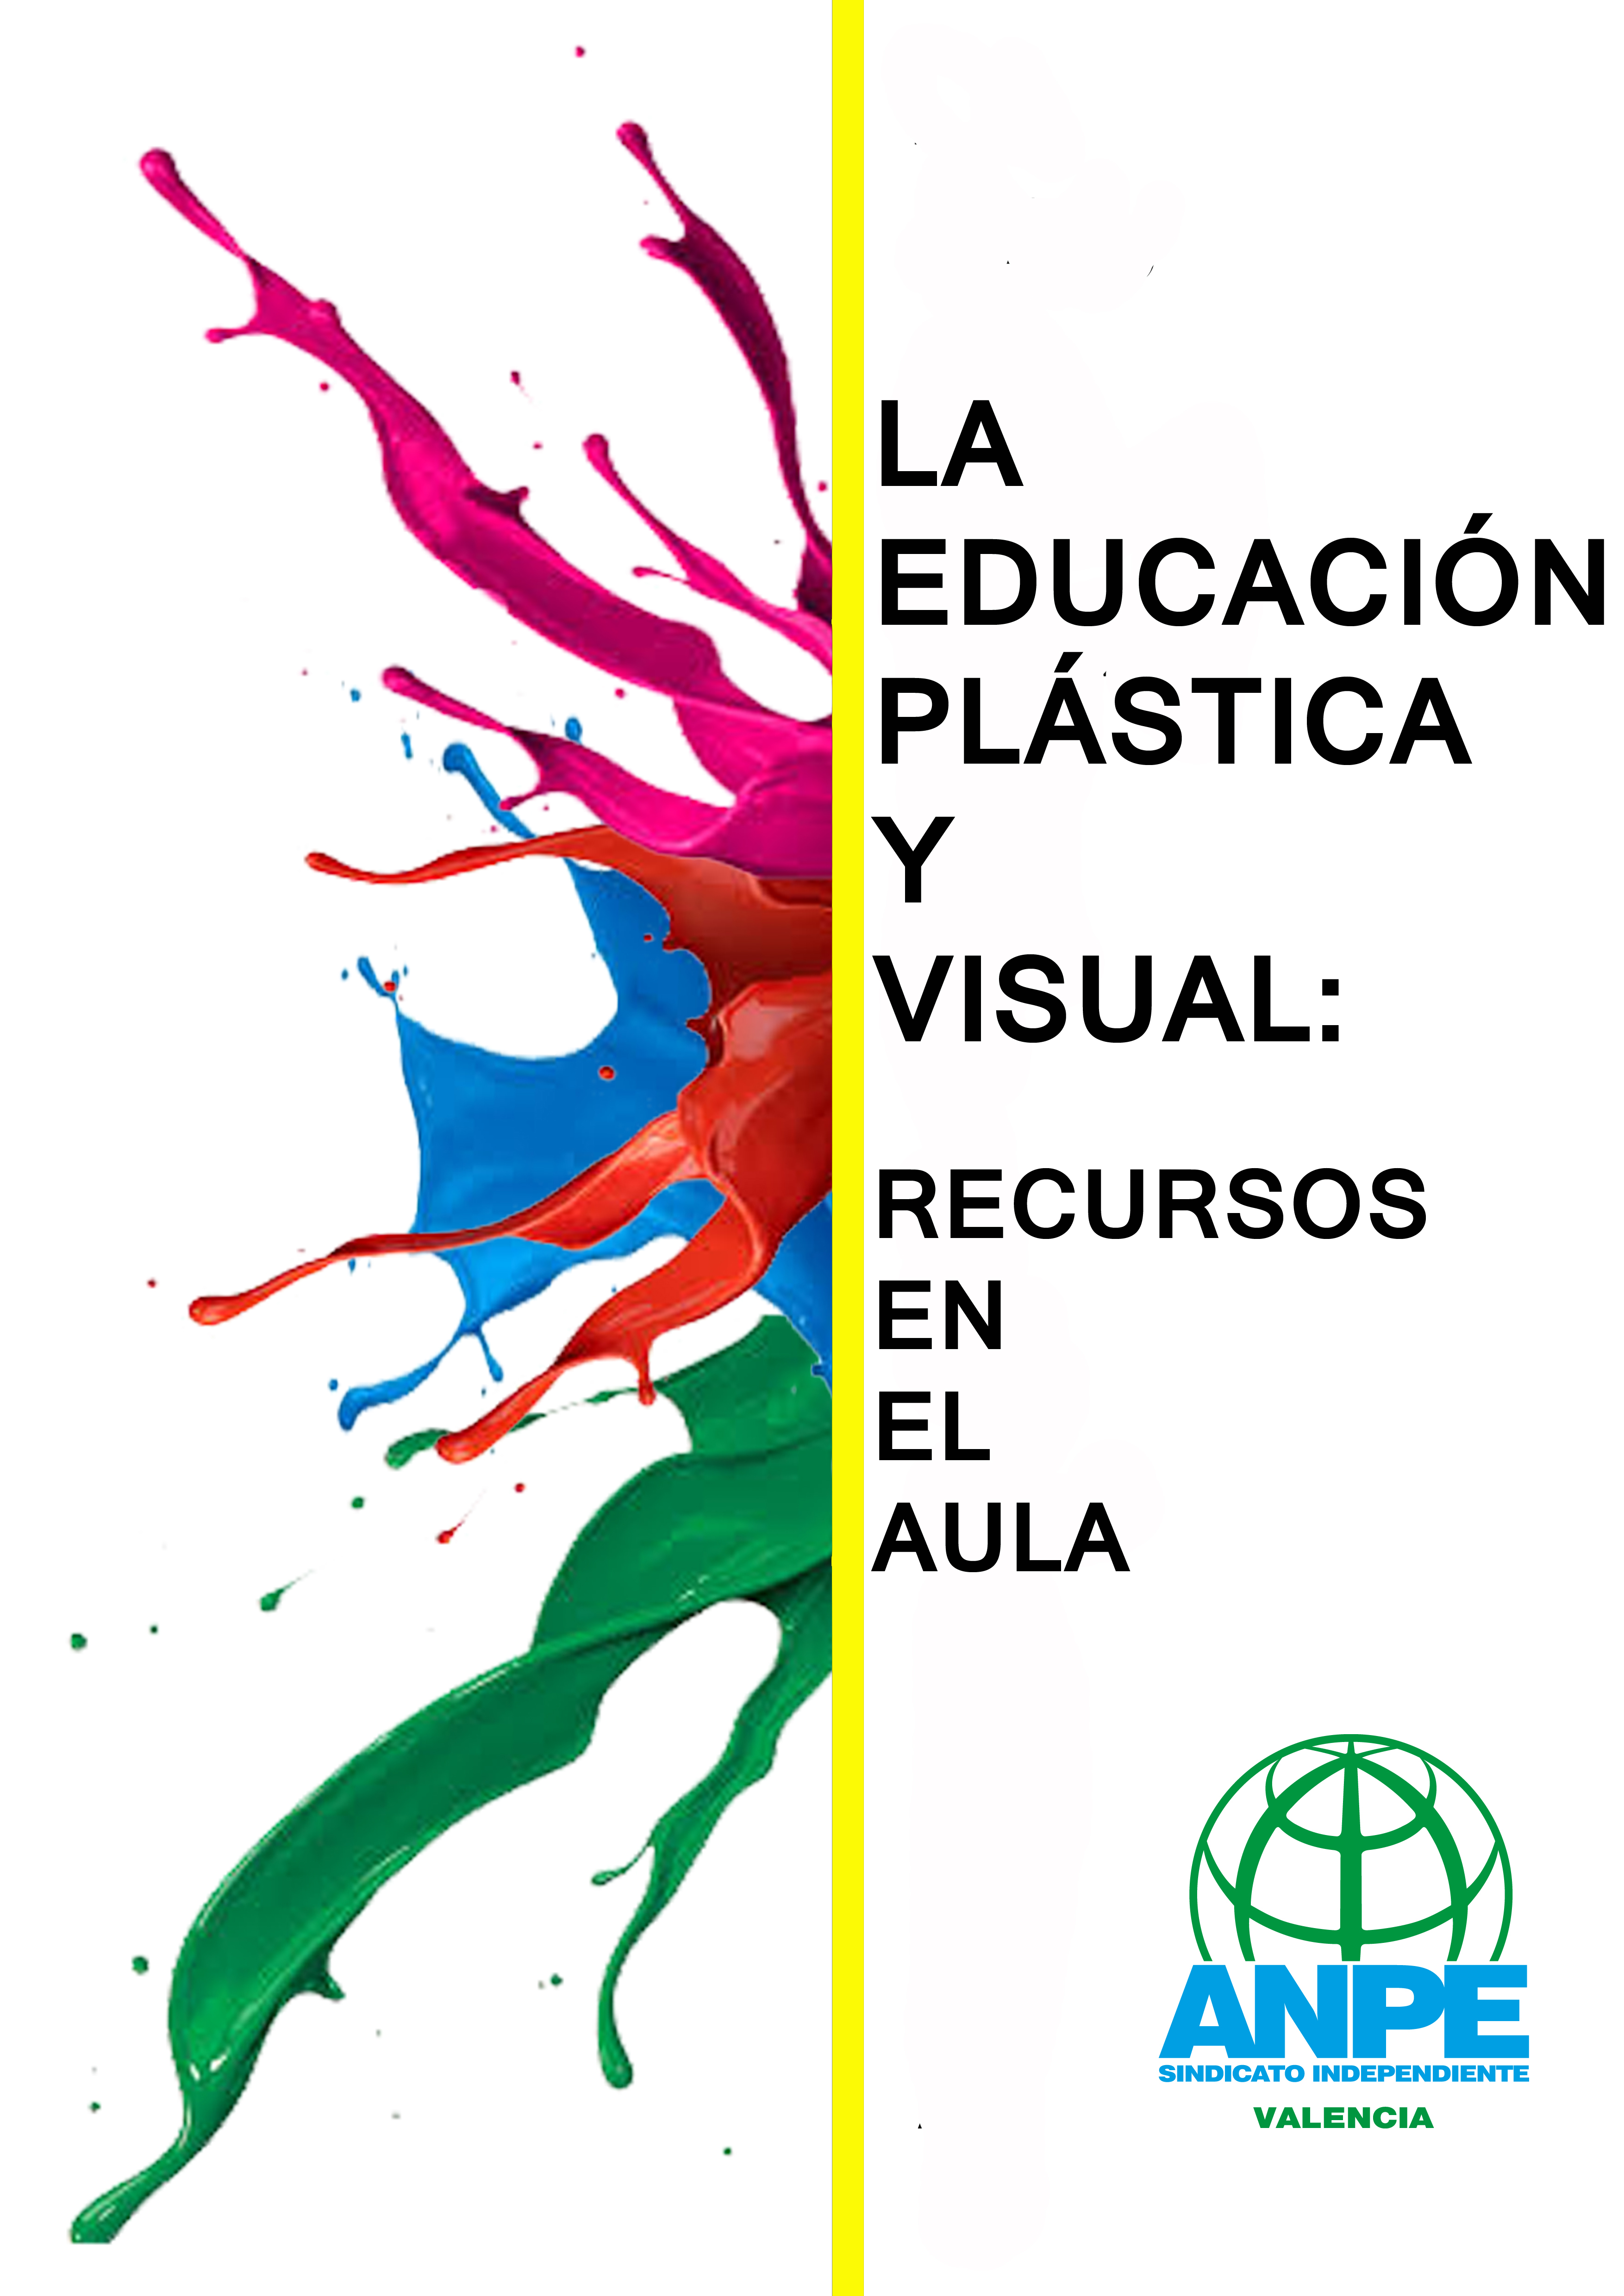 La educación plástica y visual: recursos en el aula